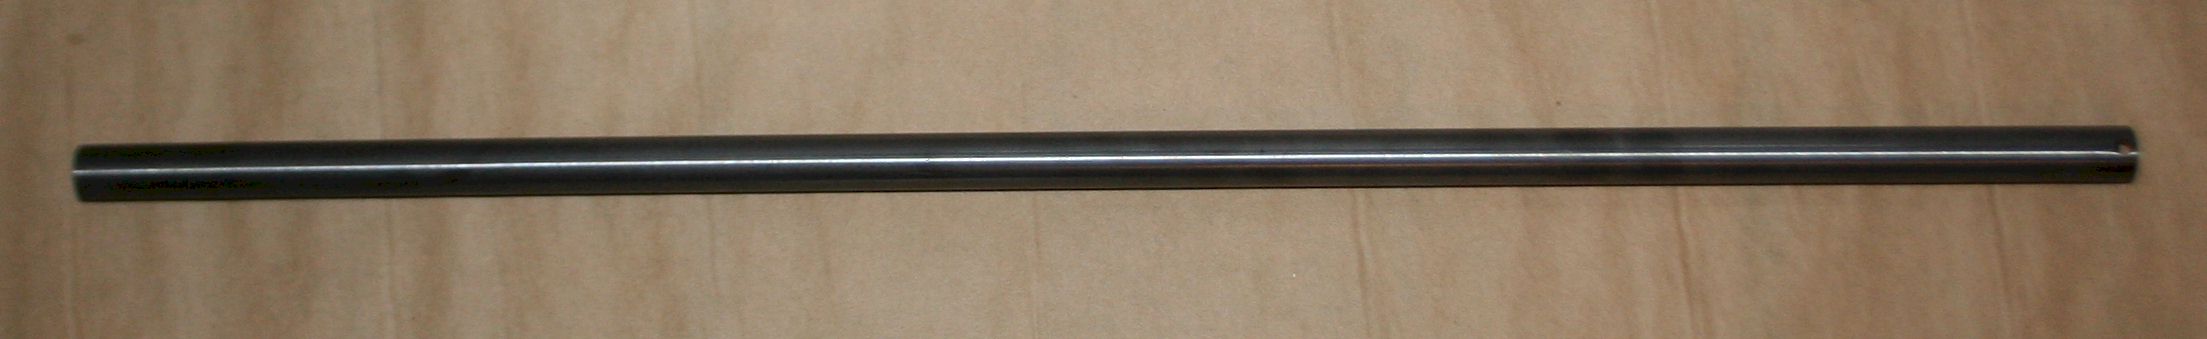 Magazine Tube Winchester SMALL Calibers for carbine ORIGINAL